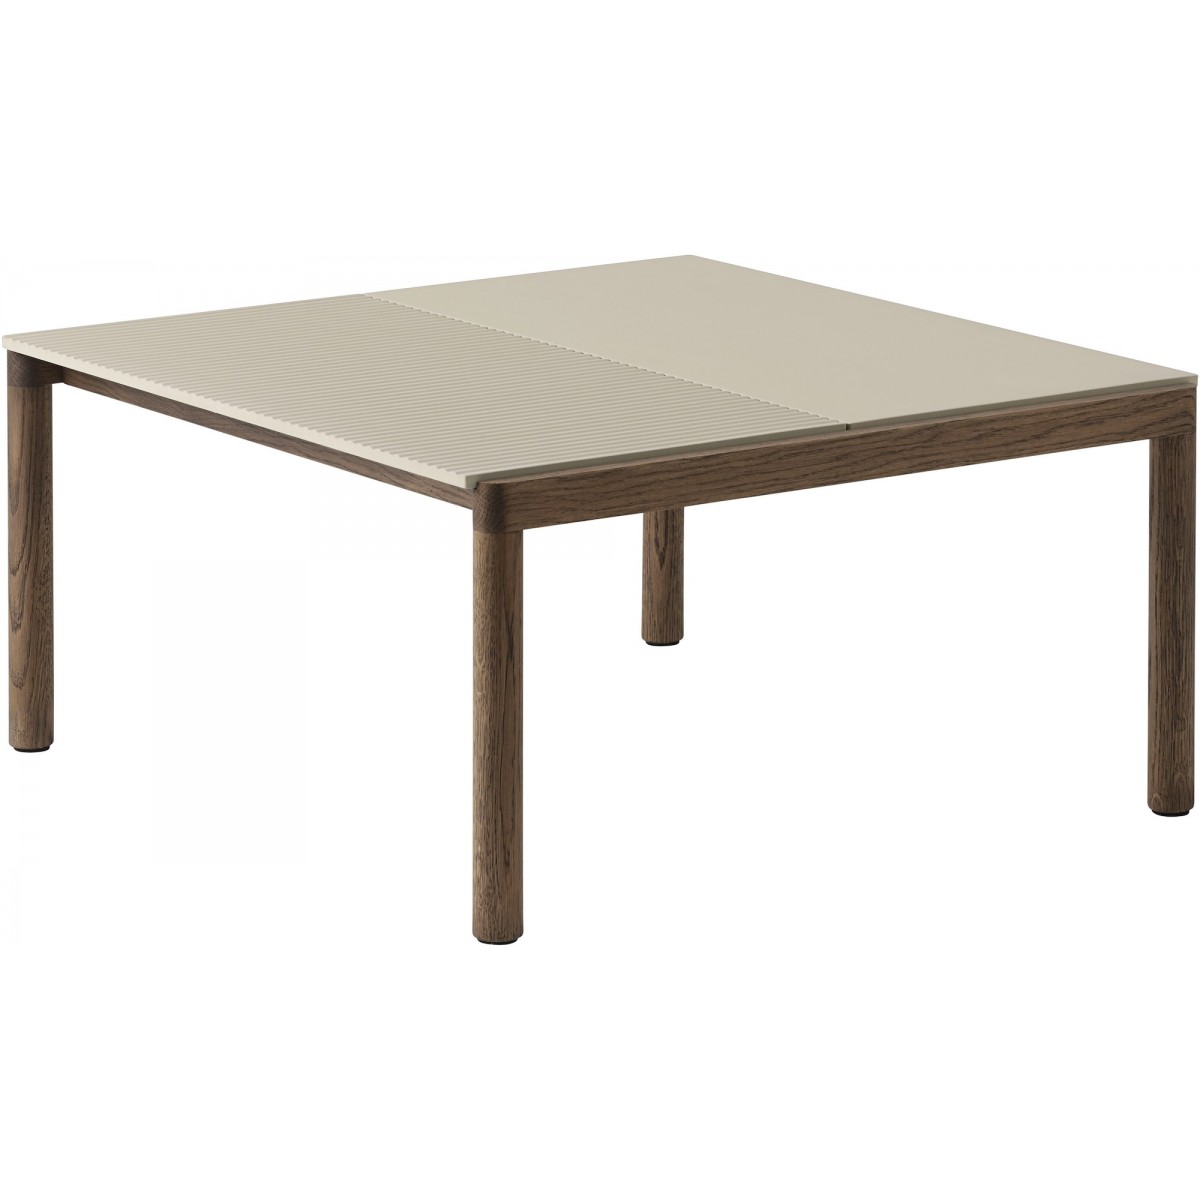 80 x 84 x 40 cm – Plain & Wavy – Sand / Dark oiled oak – Couple coffee table